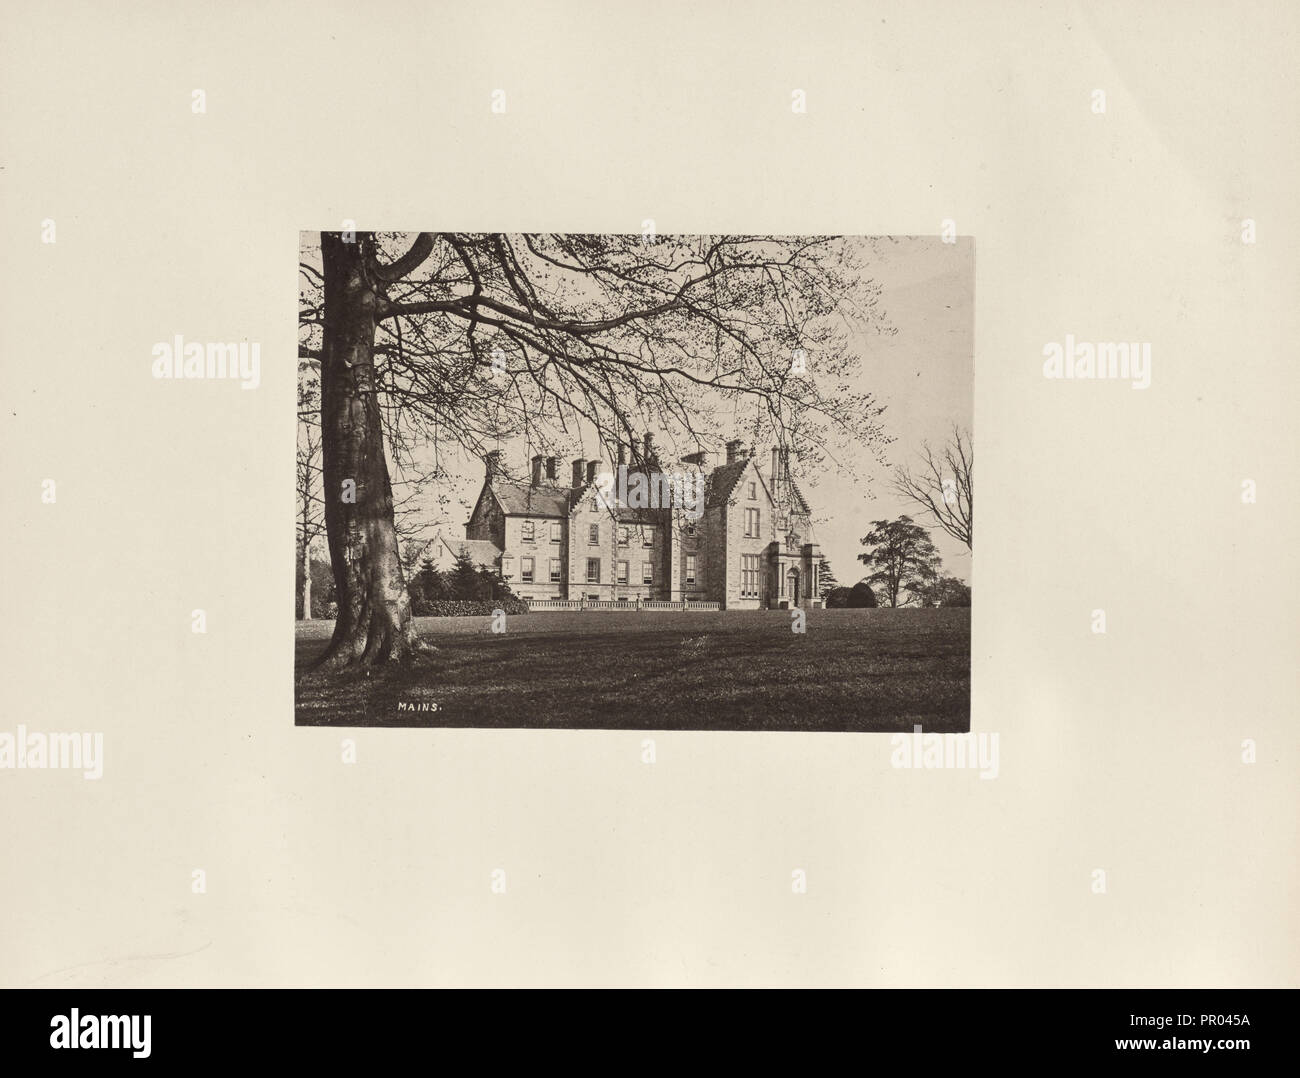 Mains; Thomas Annan, Scottish,1829 - 1887, Glasgow, Scotland; 1878; Albumen silver print Stock Photo